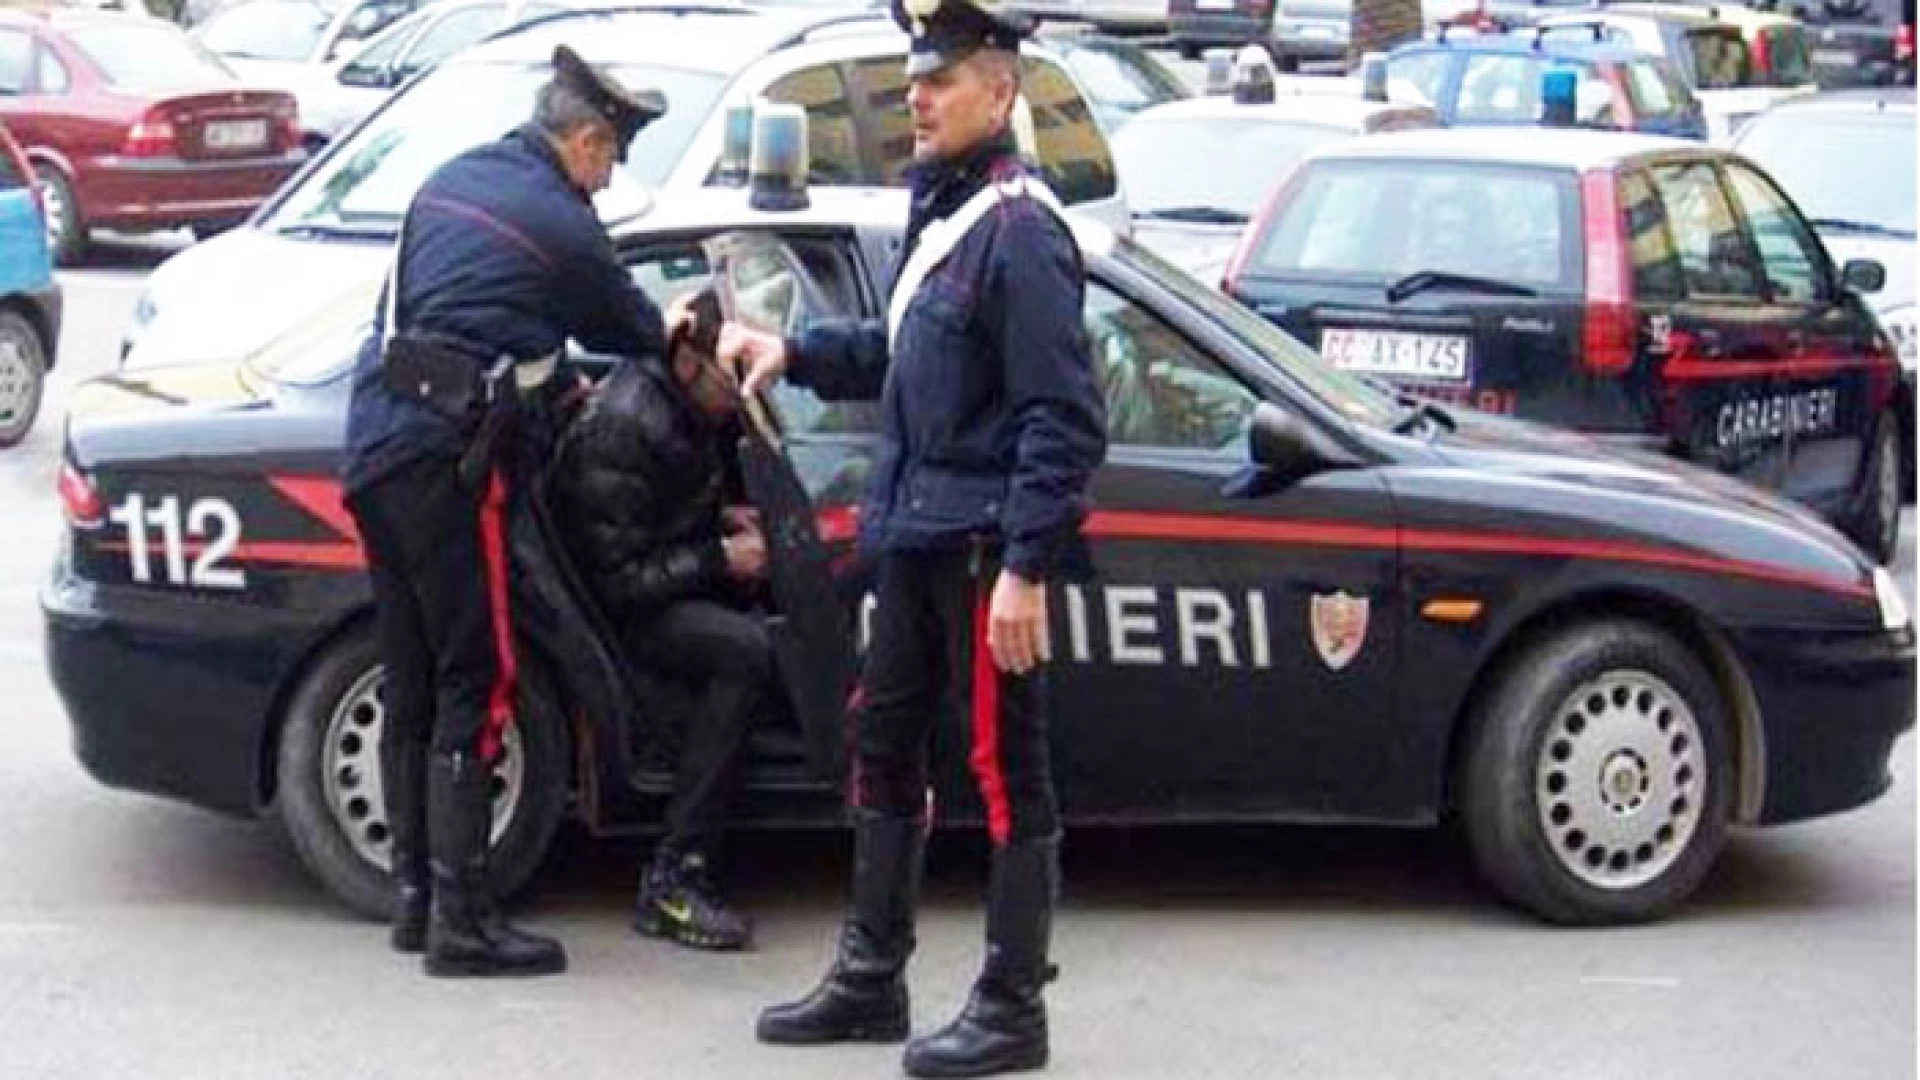 Venafro: 30enne del posto denunciato dai Carabinieri per truffa aggravata. Aveva acquistato macchine agricole con assegni contraffatti.